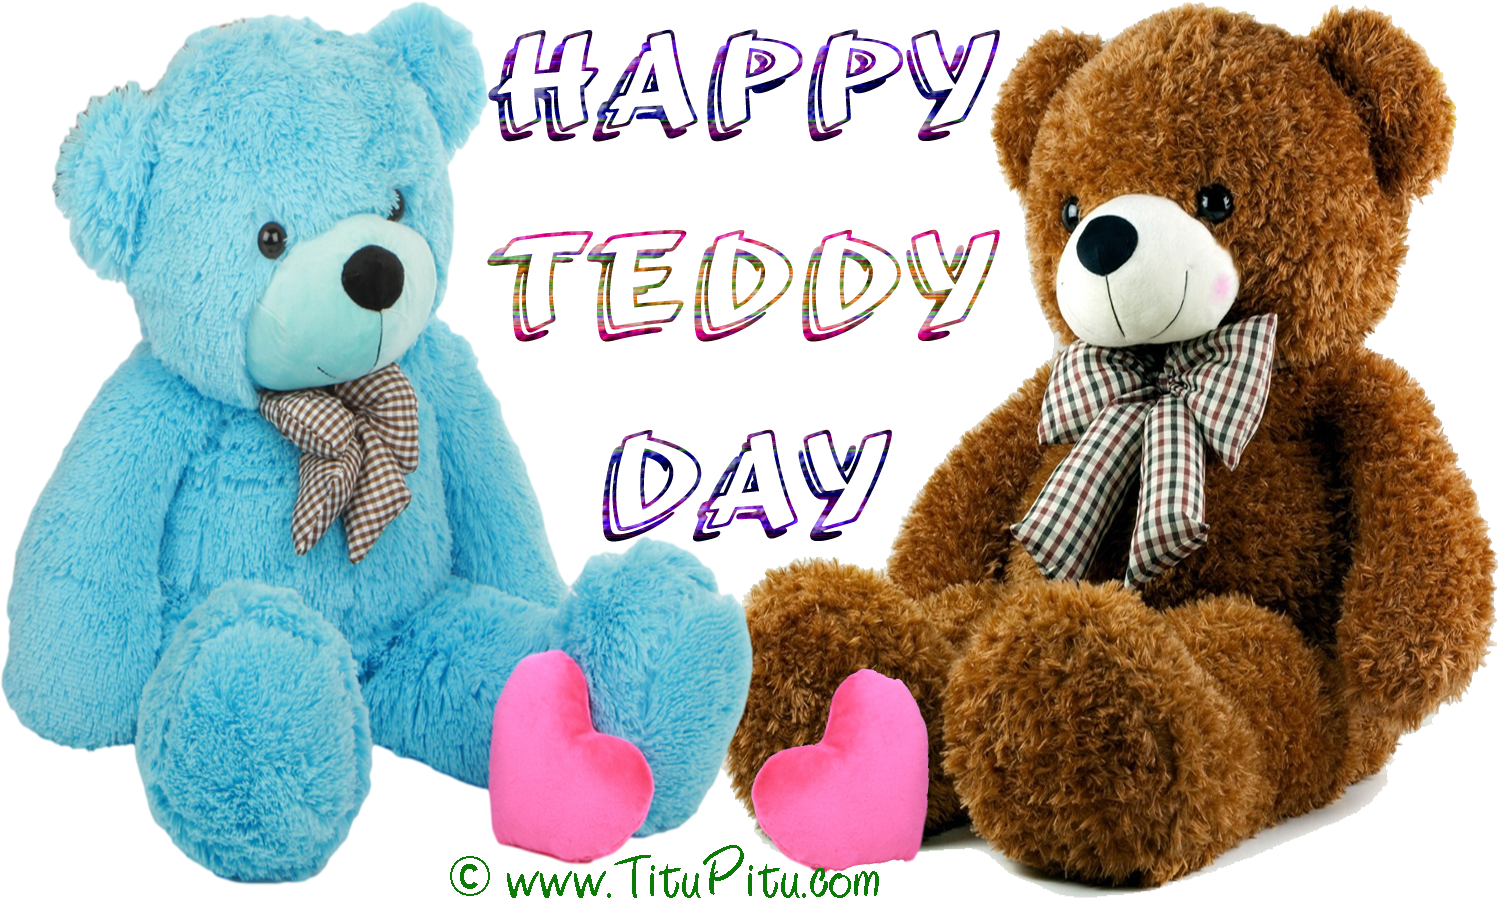 happy teddy day wallpaper,stuffed toy,teddy bear,toy,plush,bear